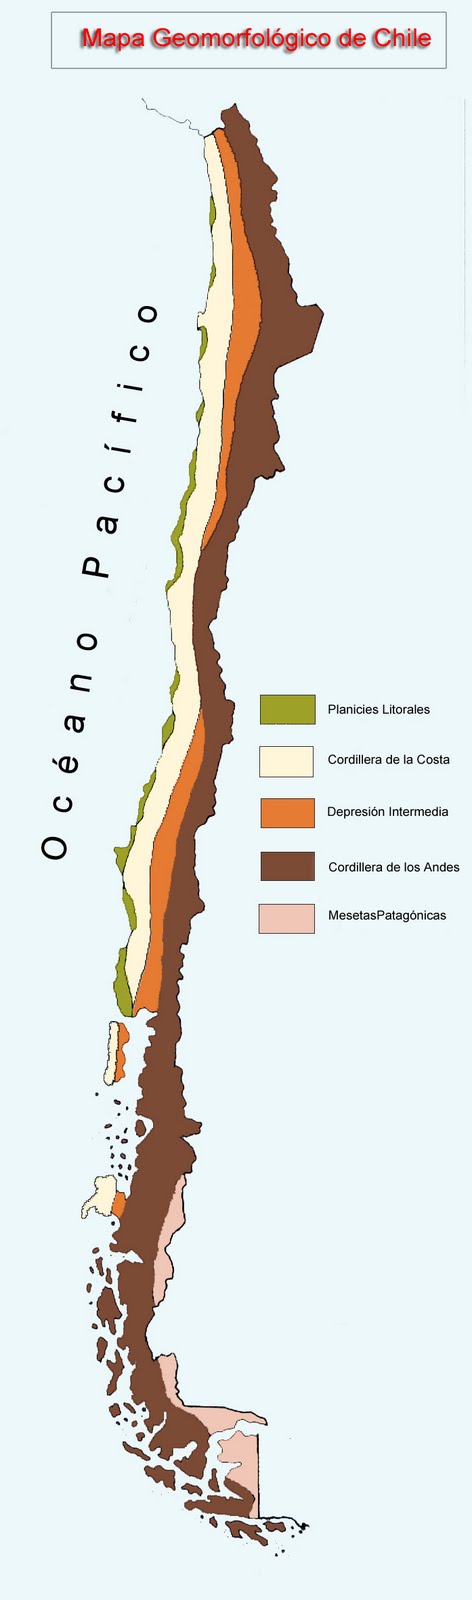 Geografía de Chile: Geografía física: Las planicies litorales